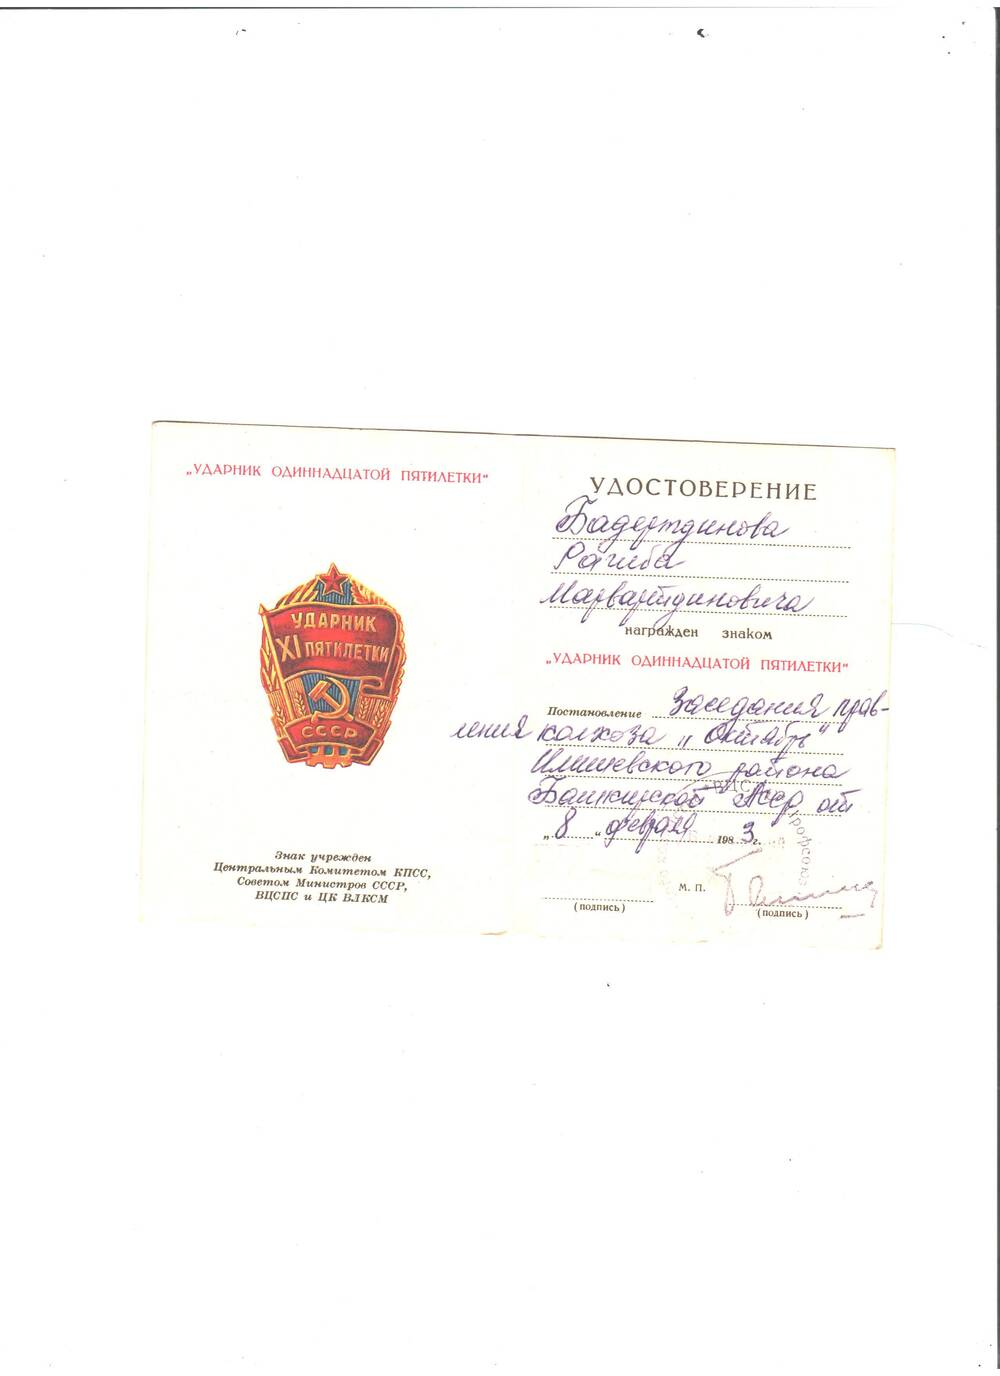 Удостоверение на имя Бадертдинова Р.М. о награждении знаком Ударника 11-й пятилетки  от 8.02.1987.